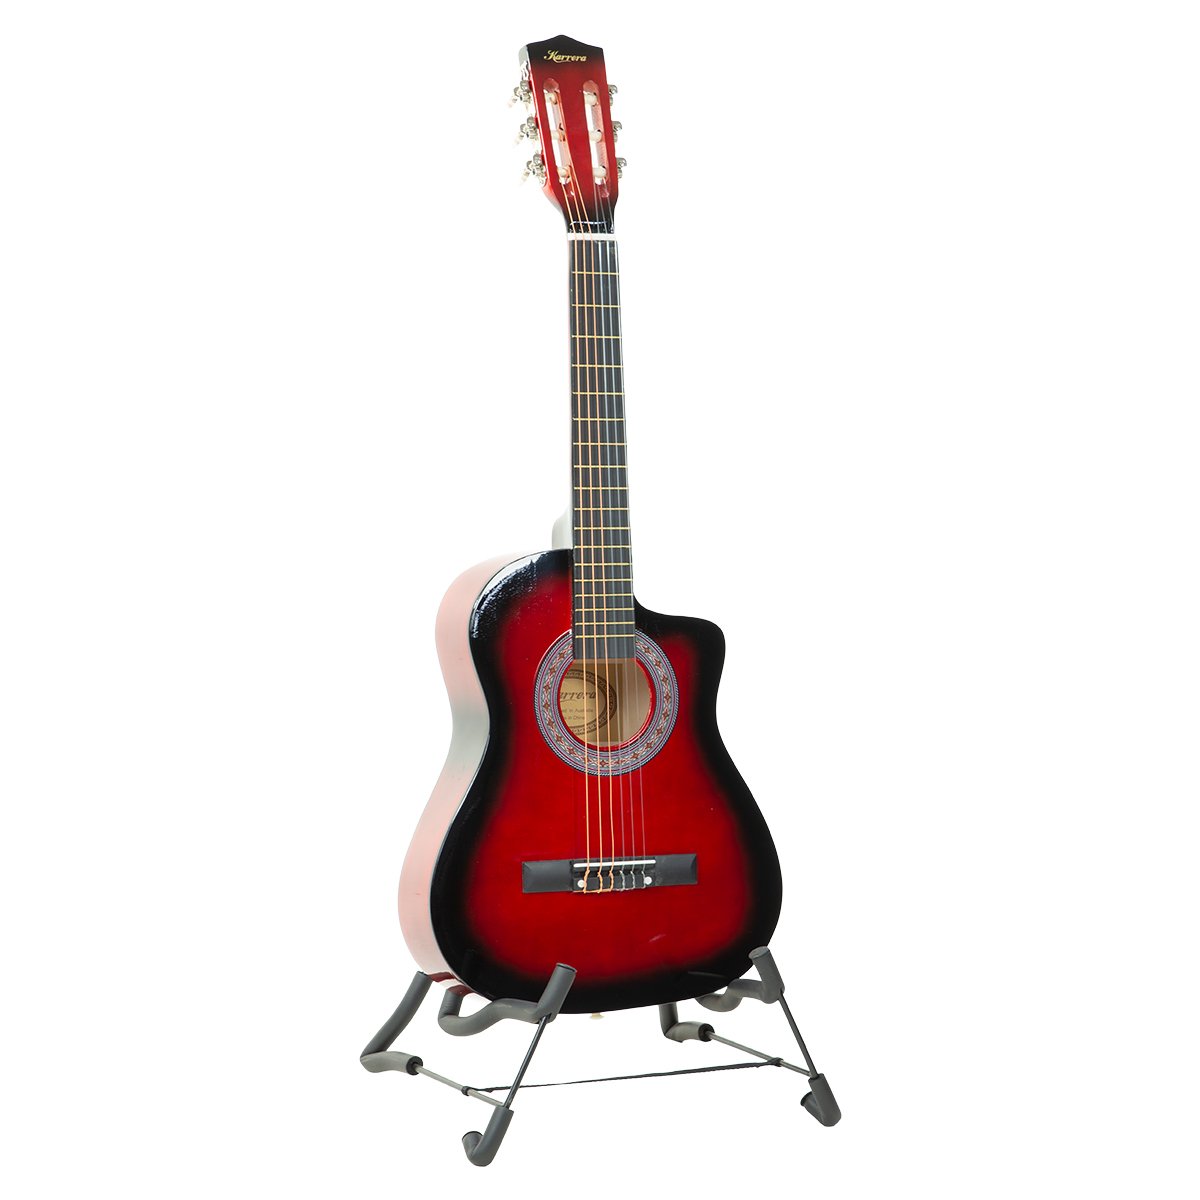 Karrera 38in Pro Cutaway Acoustic Guitar with guitar bag - Red Burst 2